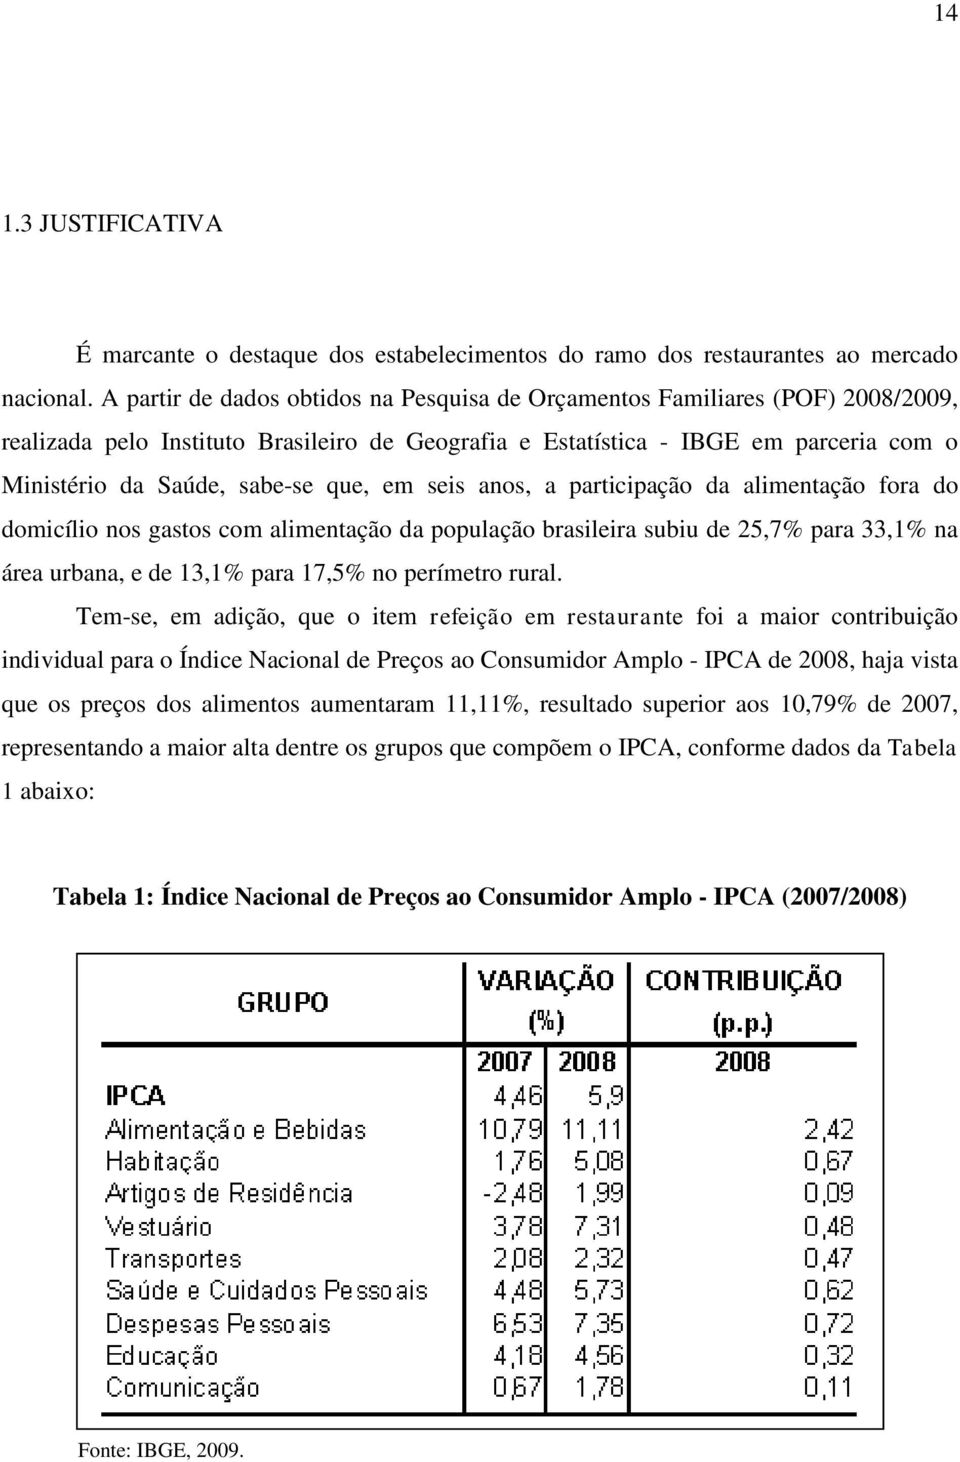 que, em seis anos, a participação da alimentação fora do domicílio nos gastos com alimentação da população brasileira subiu de 25,7% para 33,1% na área urbana, e de 13,1% para 17,5% no perímetro